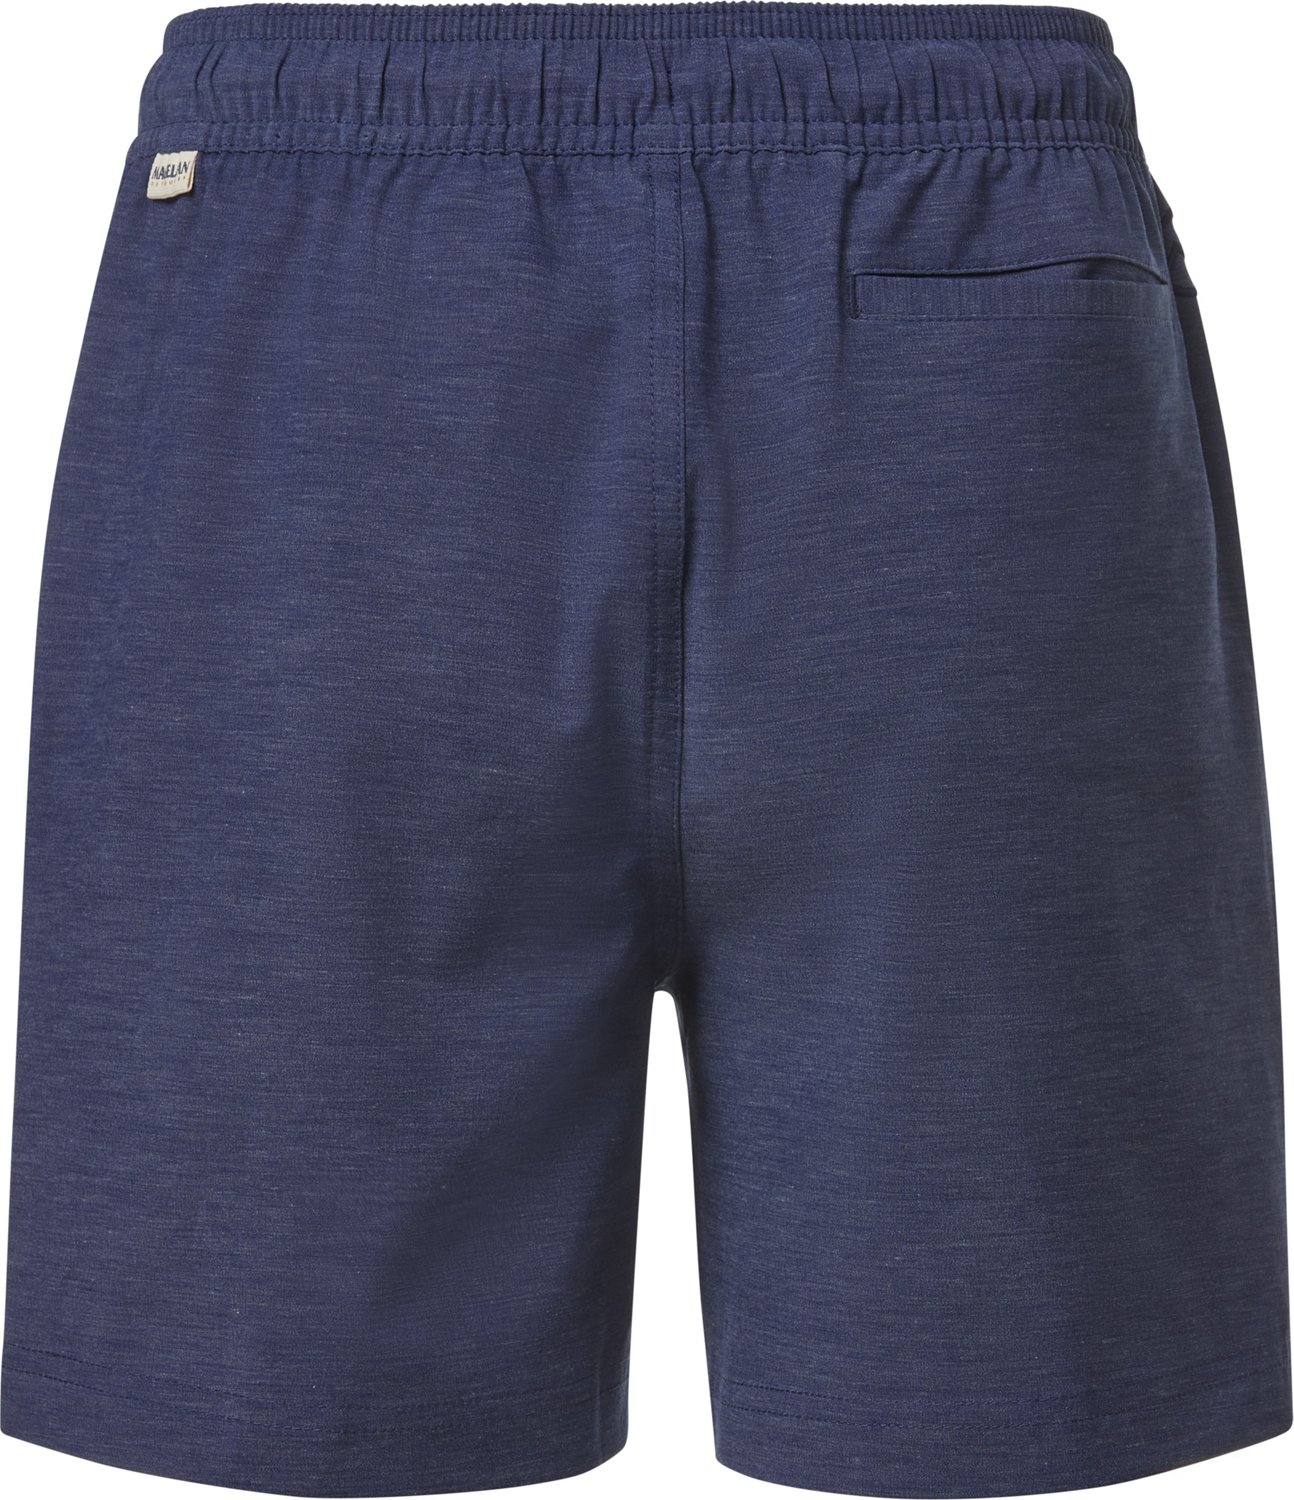 Magellan Fishing Gear Shorts - XL boys